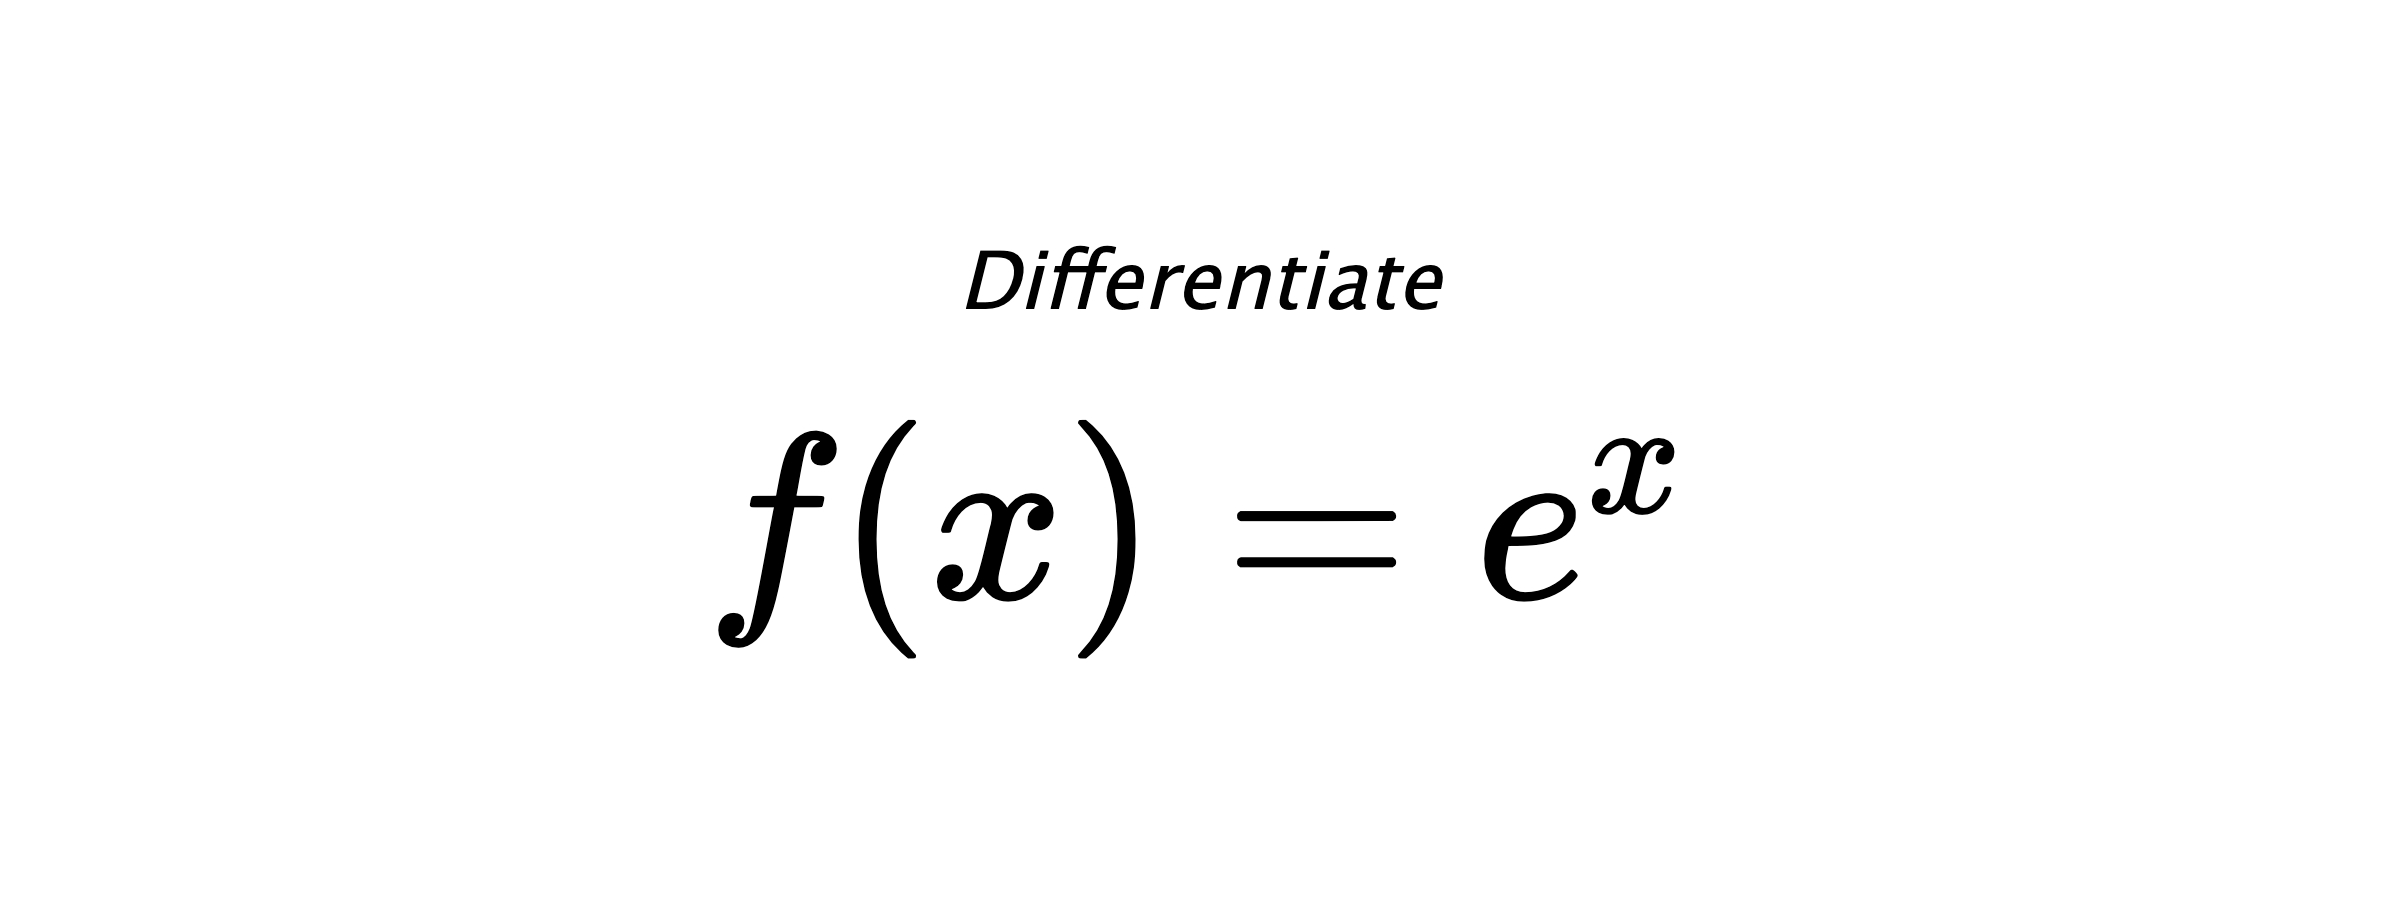 Differentiate $ f(x) = e^{x} $